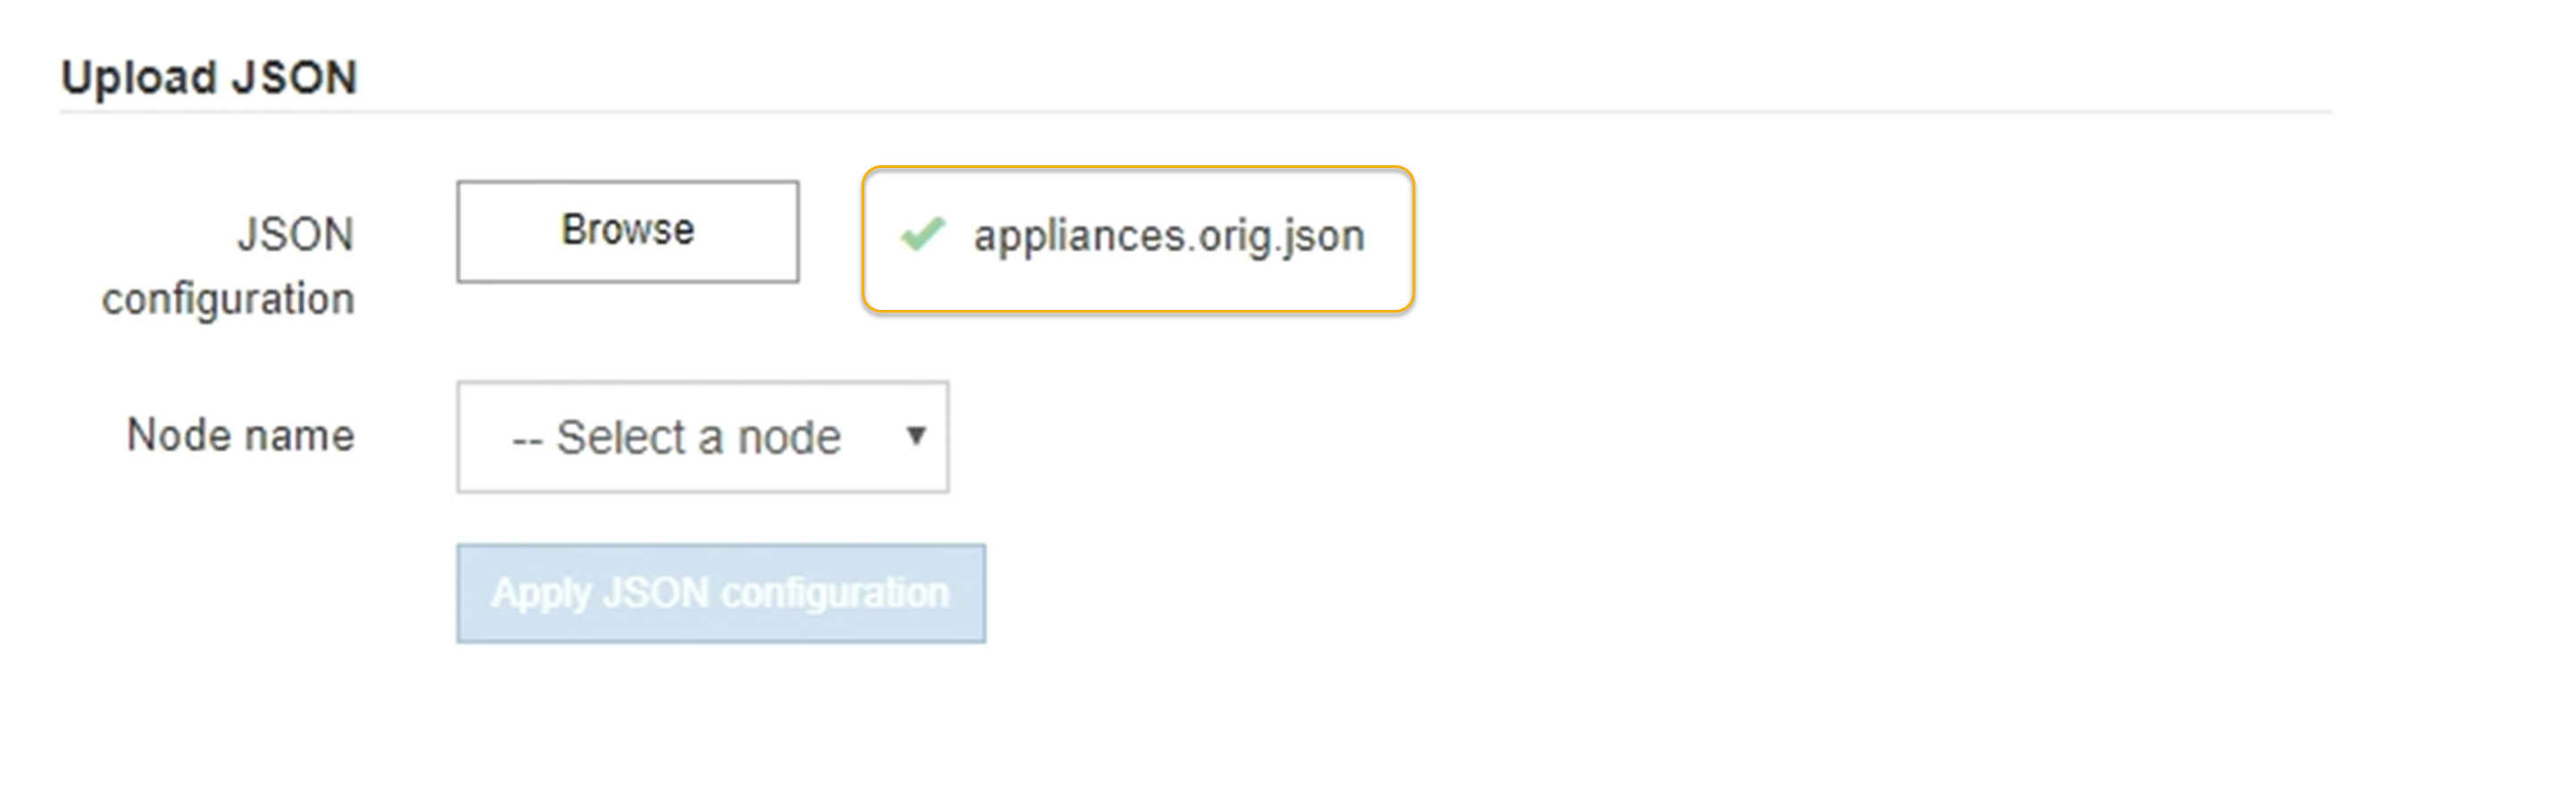 Actualice la configuración del dispositivo JSON cargada